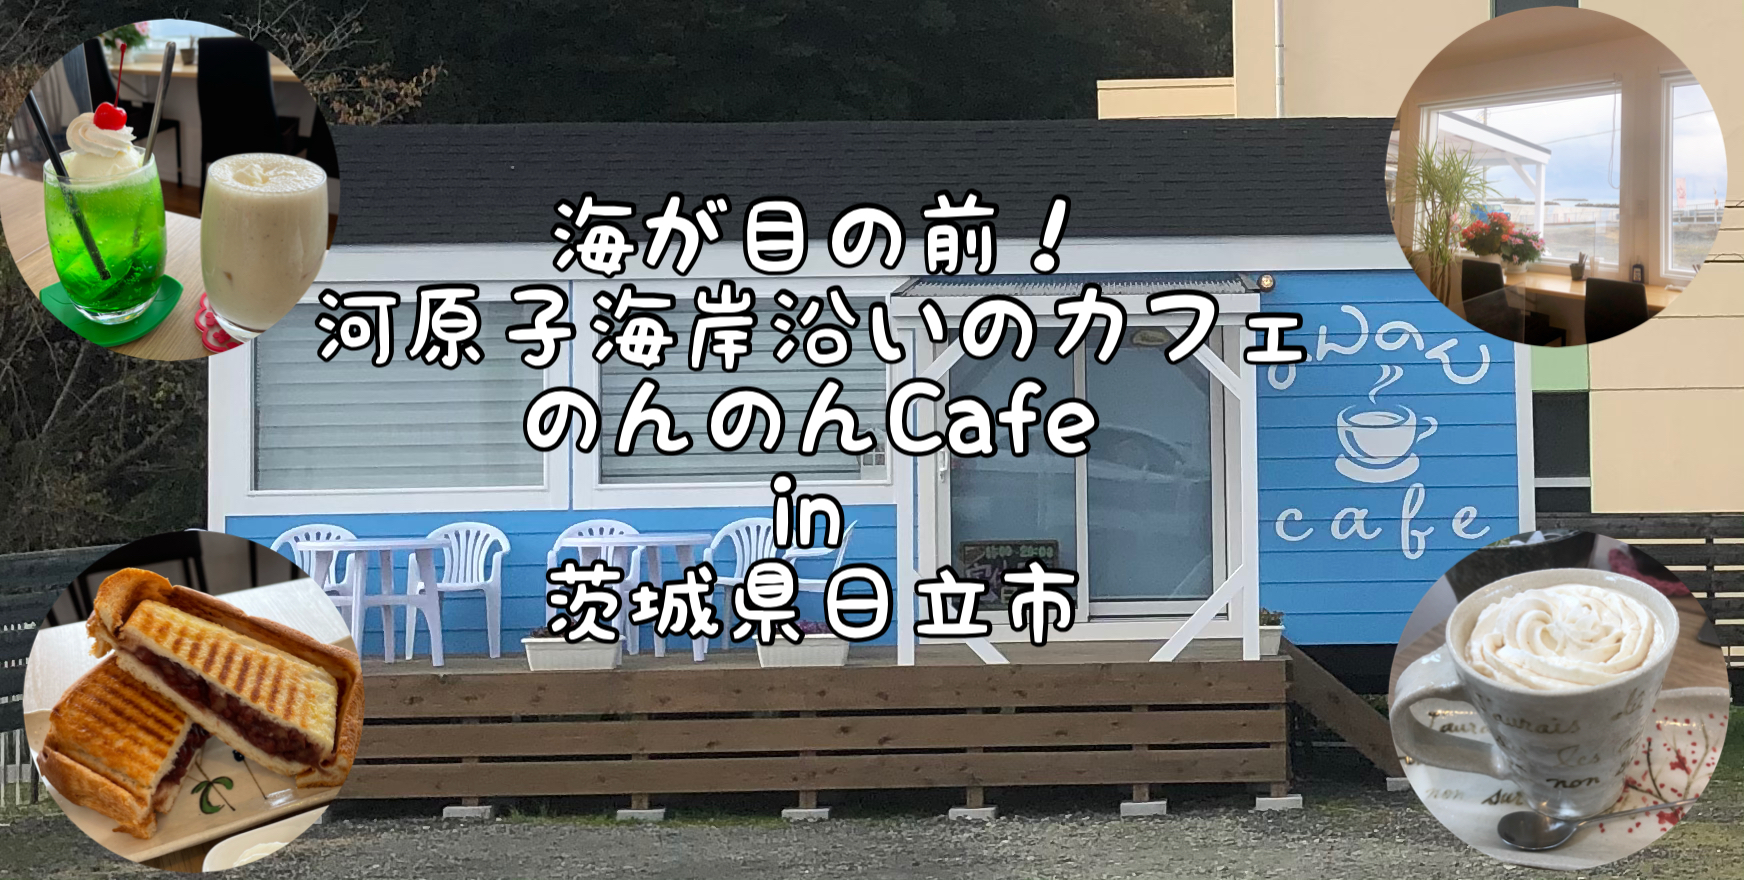 のんのんカフェ のんのんcafe 河原子海岸沿いにある海カフェ In 茨城県日立市 Satochannel